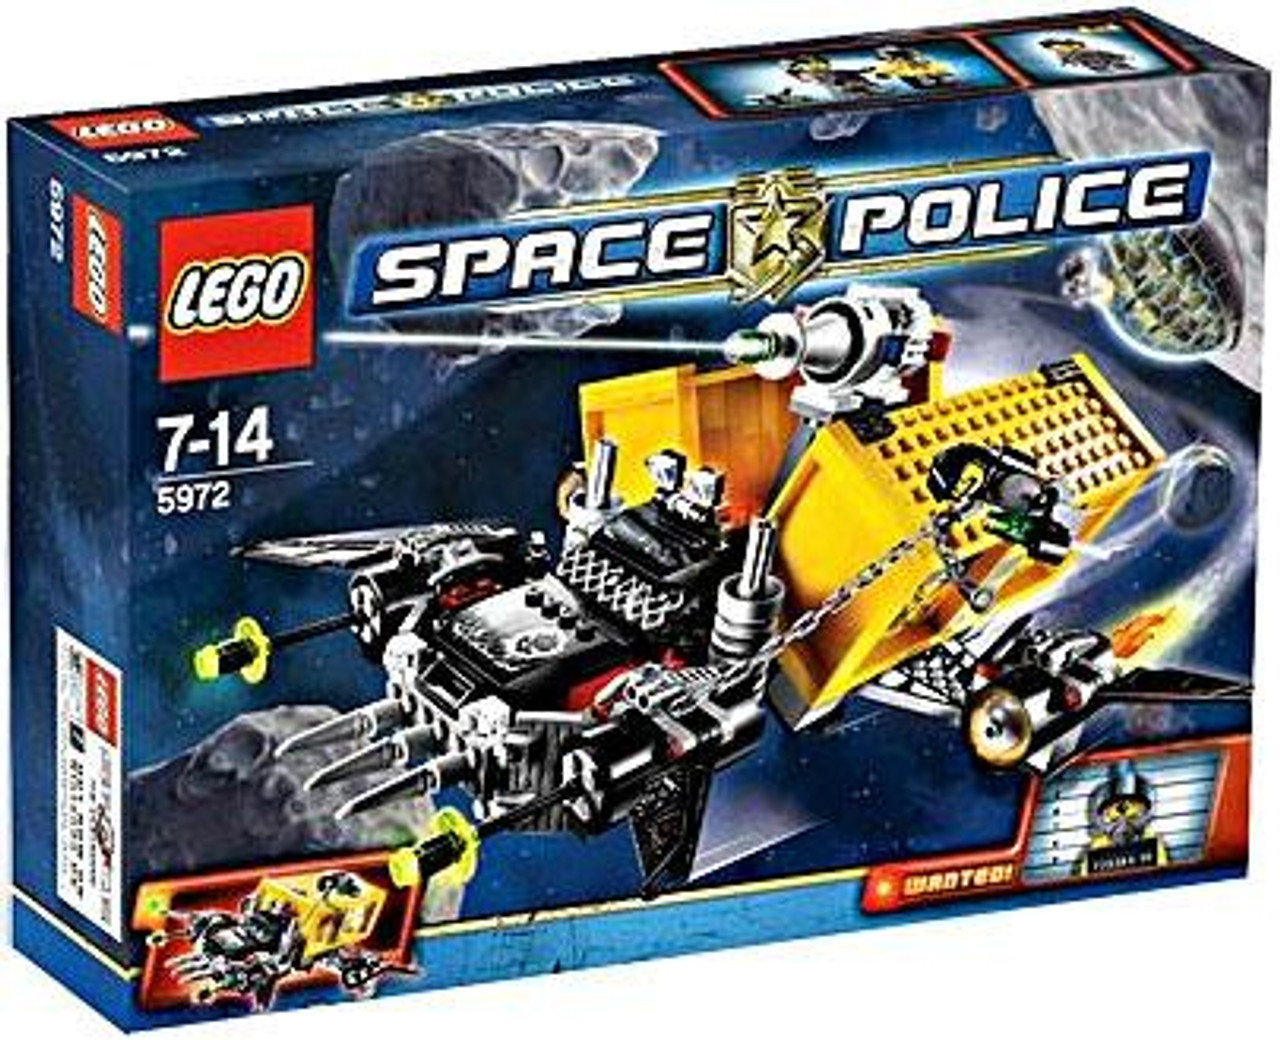 lego space police ship